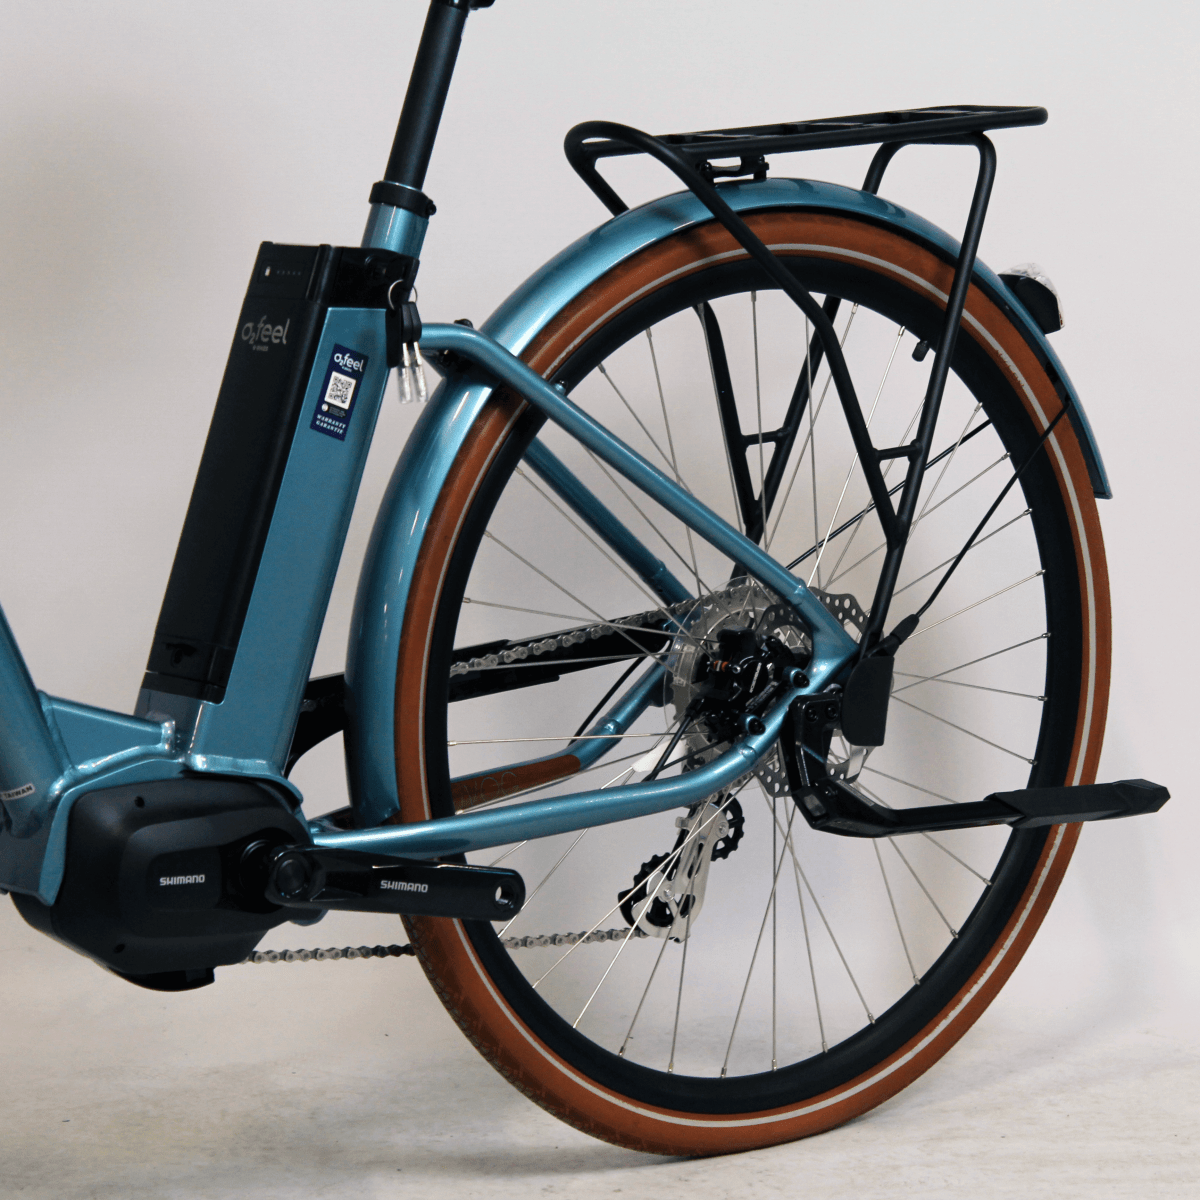 Vélo électrique iVog City Up 3.1 UNIV bleu | LOEWI